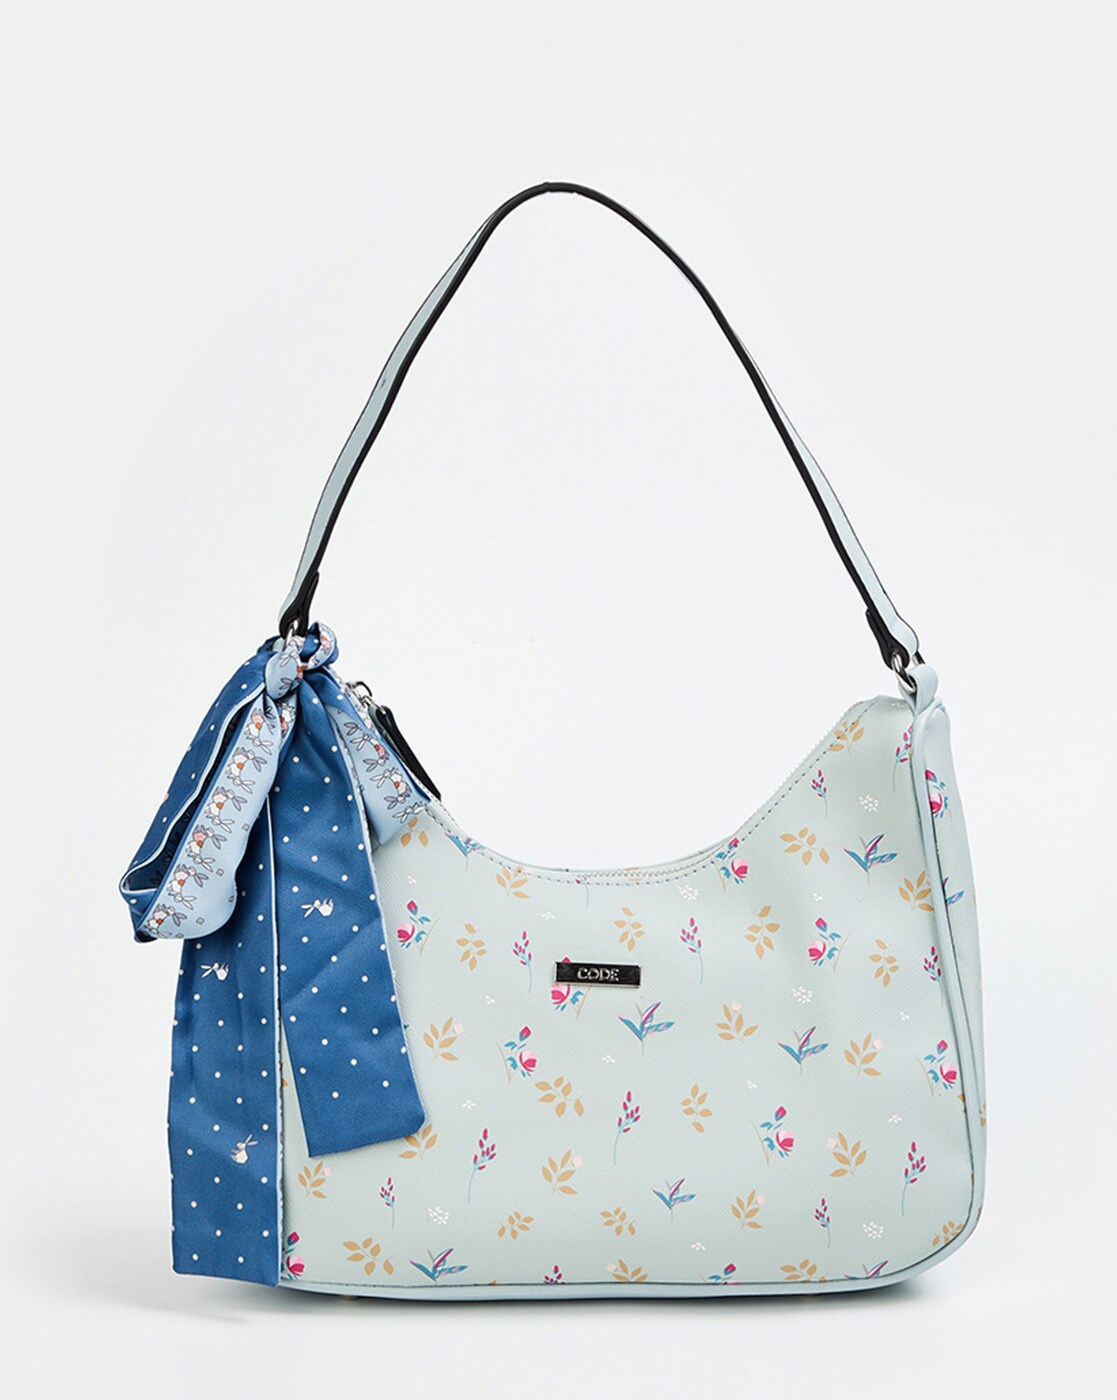 Pin on Women's Handbag's Under $75